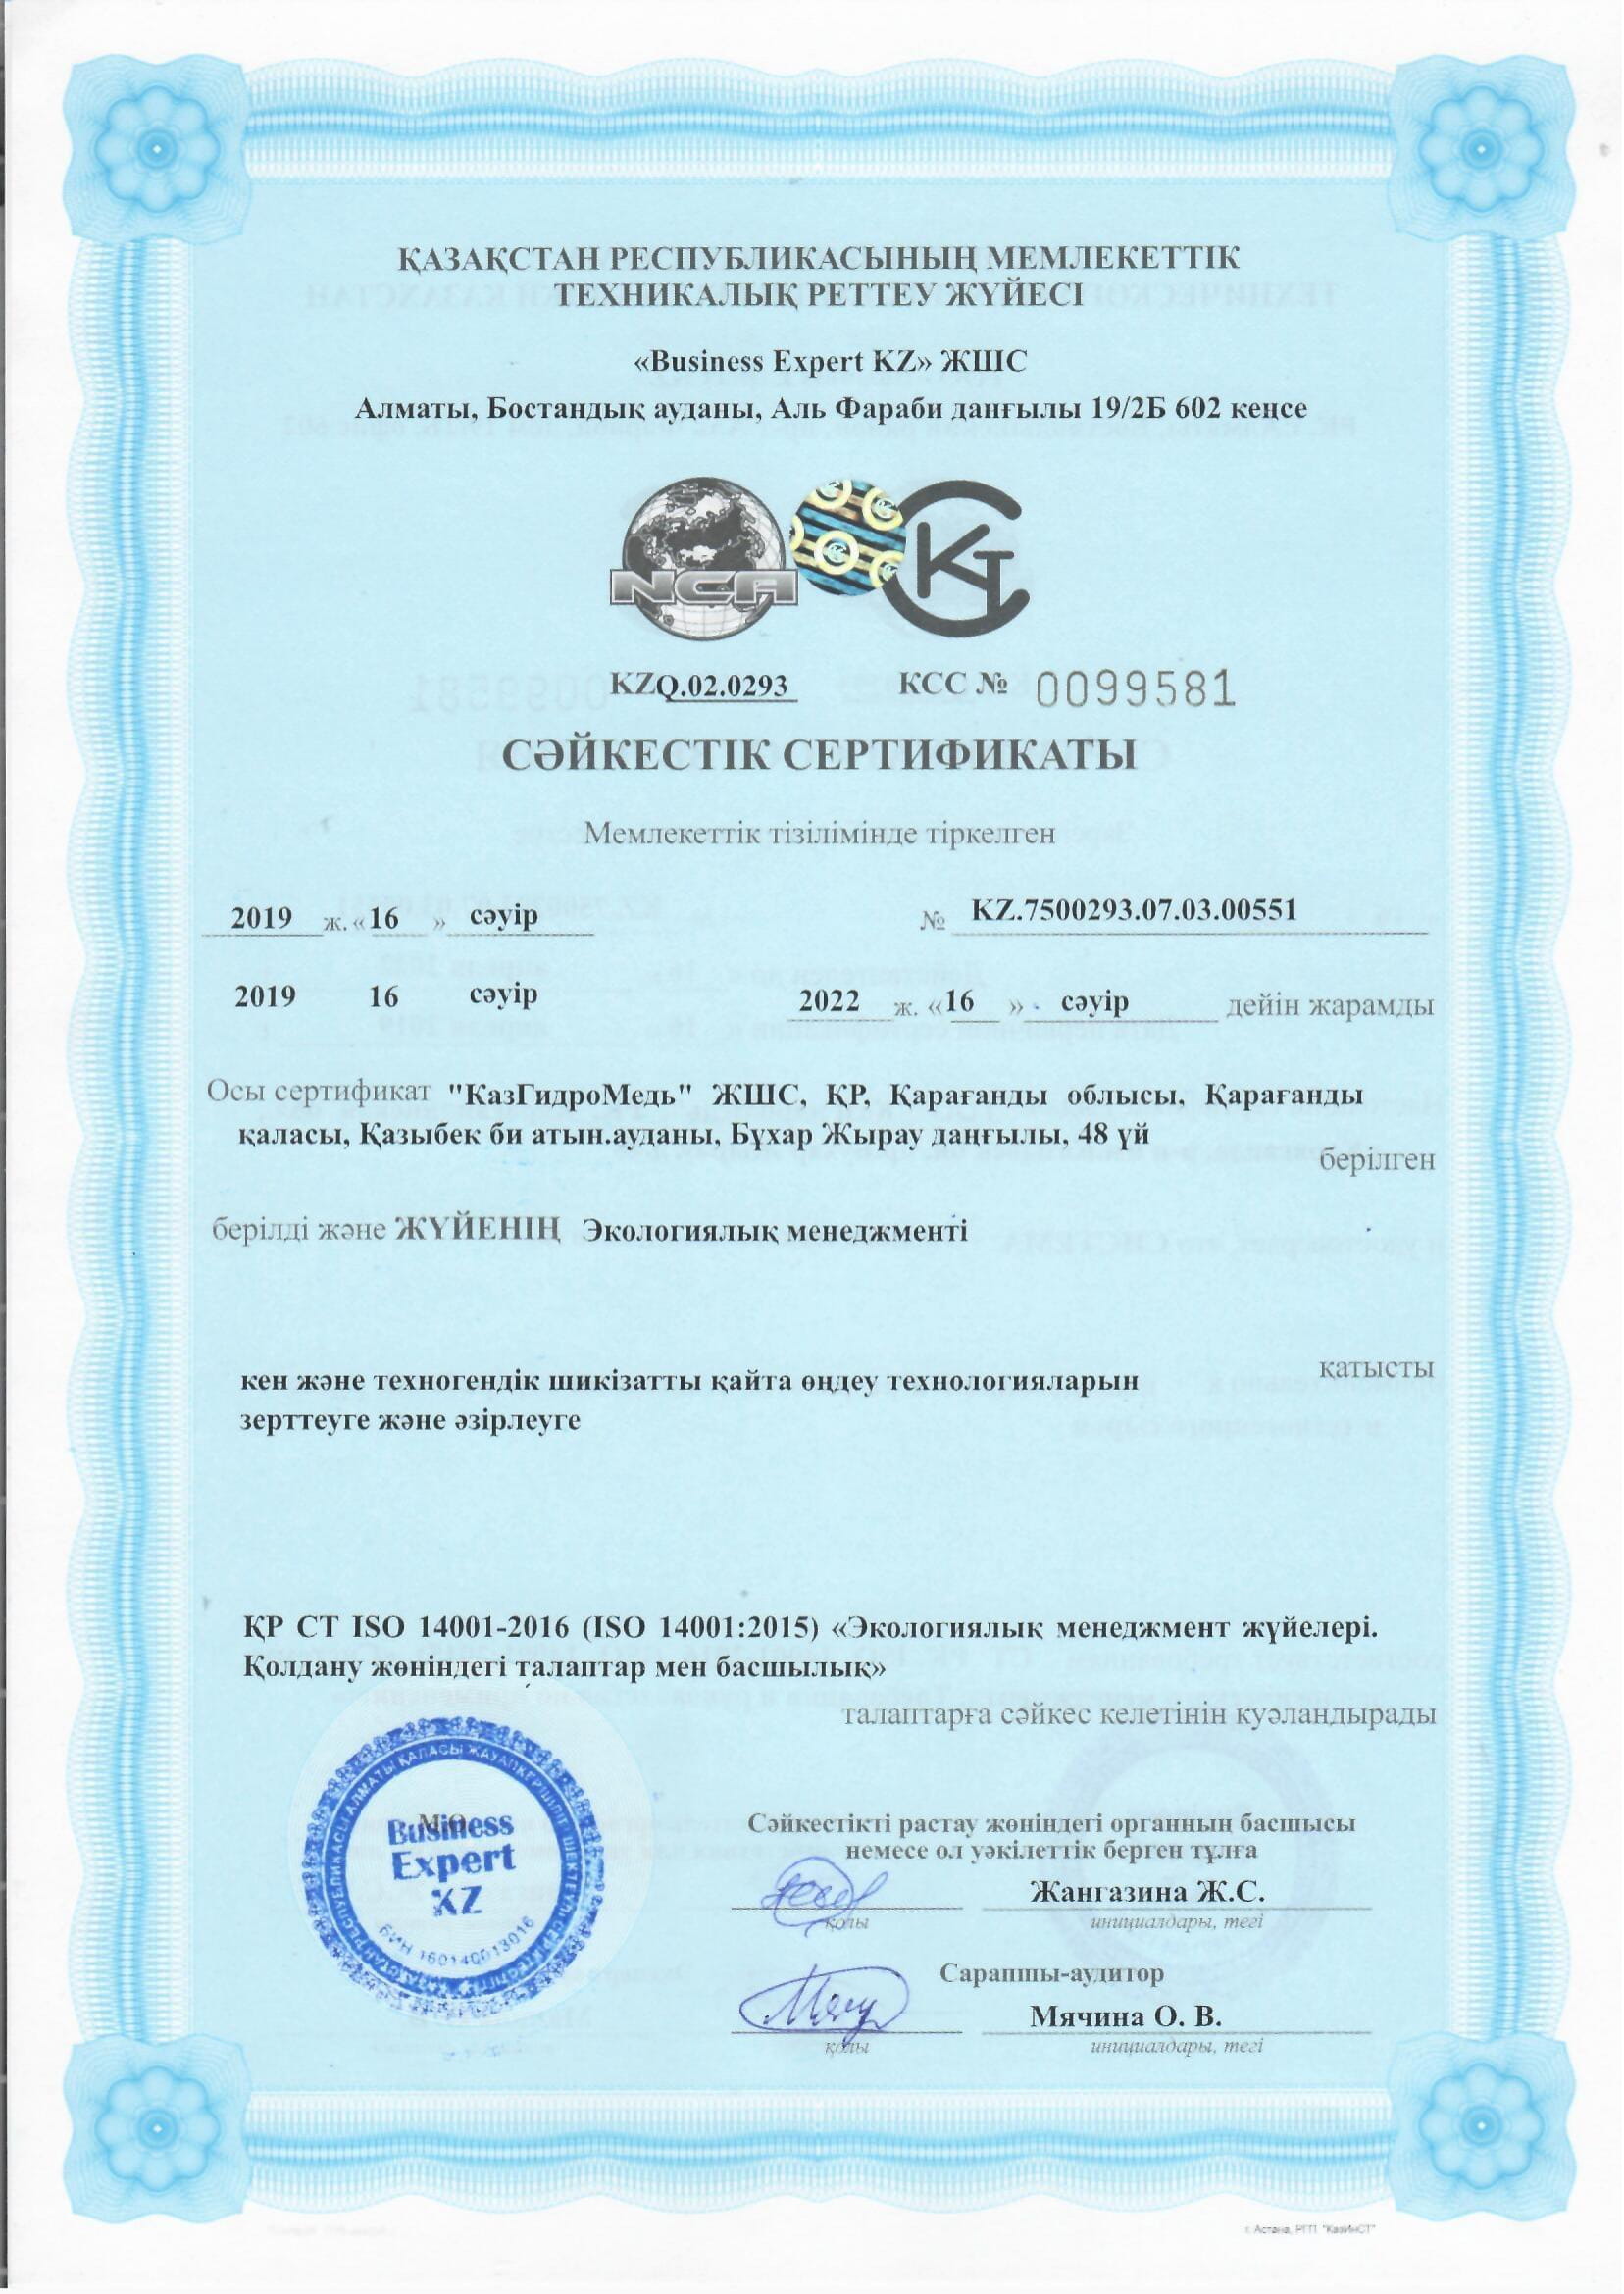 3 - Сертификаты соответствия 2019-4